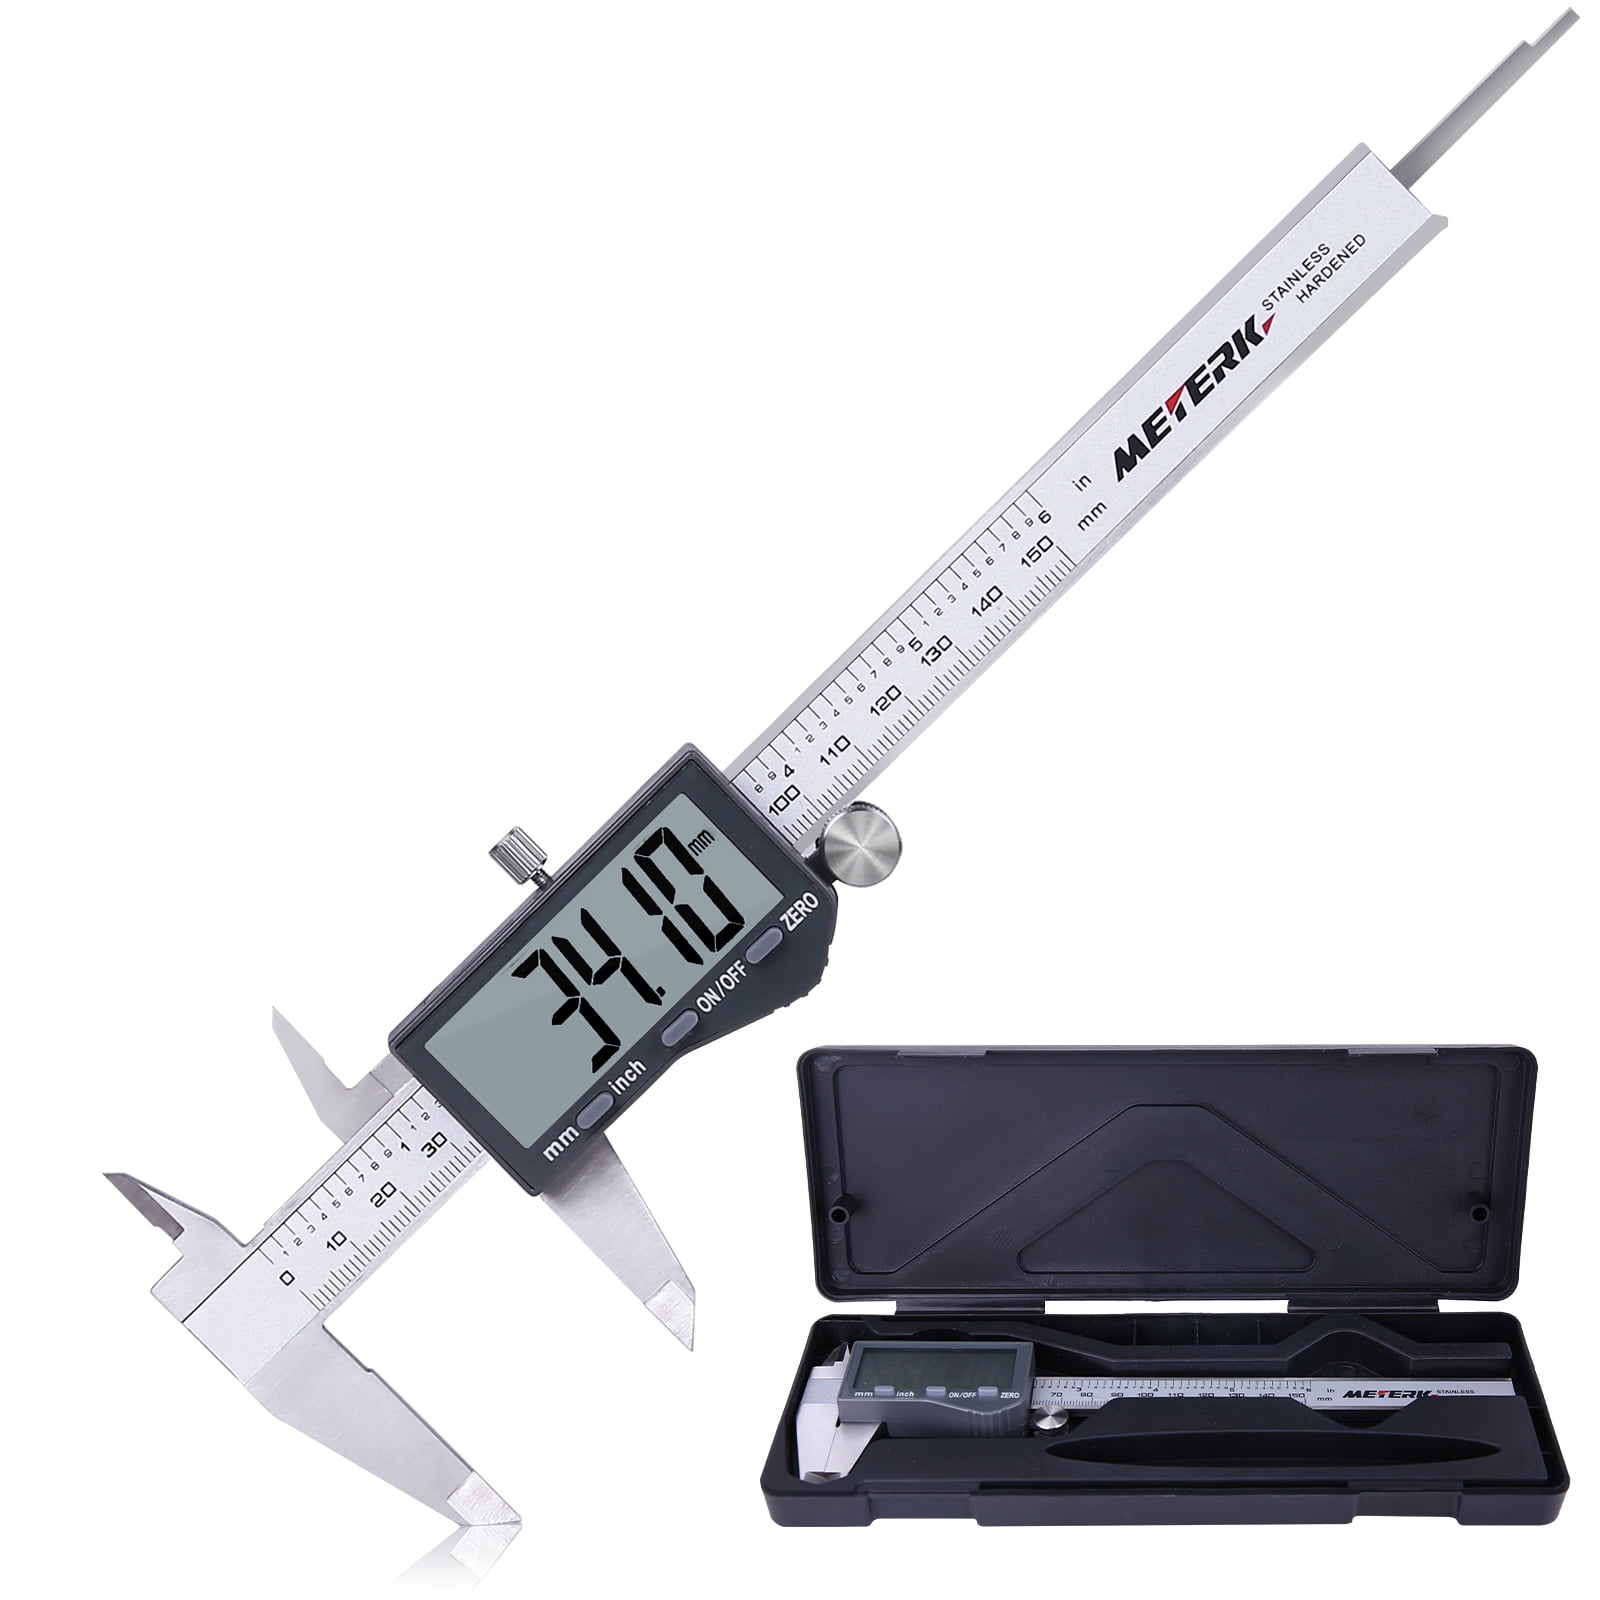 NEW 6" 150mm LCD Digital Vernier Caliper Micrometer Gauge Measure Tool 2 Battery 